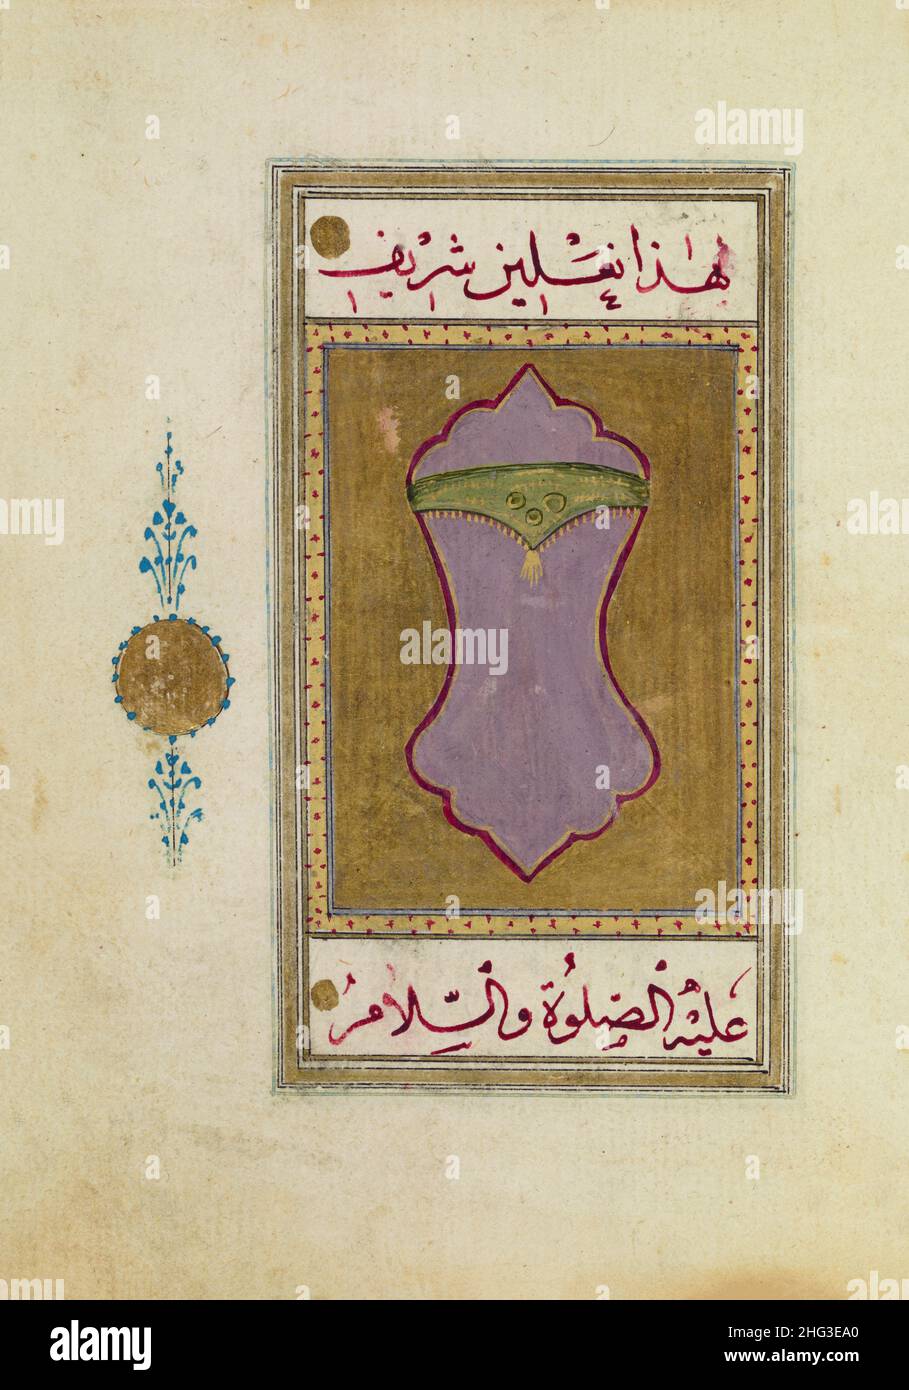 Iluminación de color de antiguos manuscritos árabes: Las sandalias (naklyn) del Profeta. 1874 Foto de stock